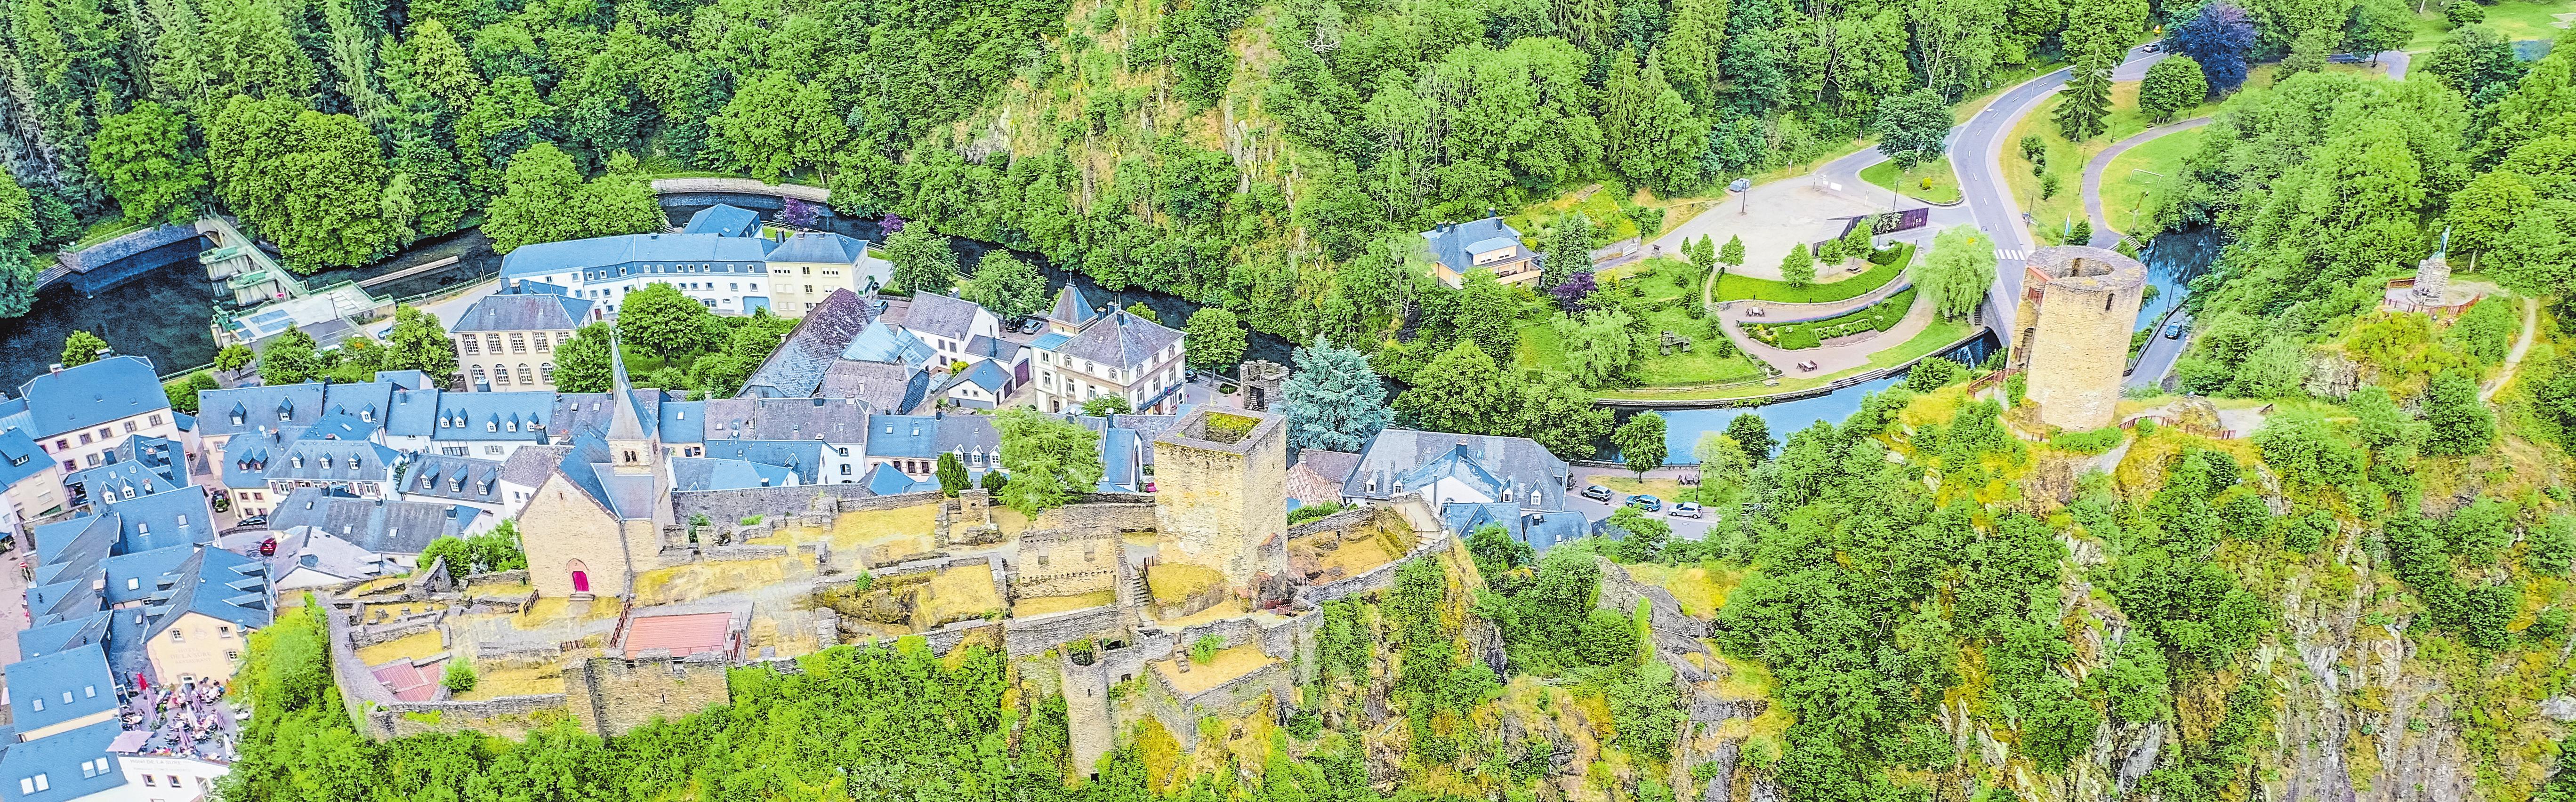 Burg Esch-Sauer-2